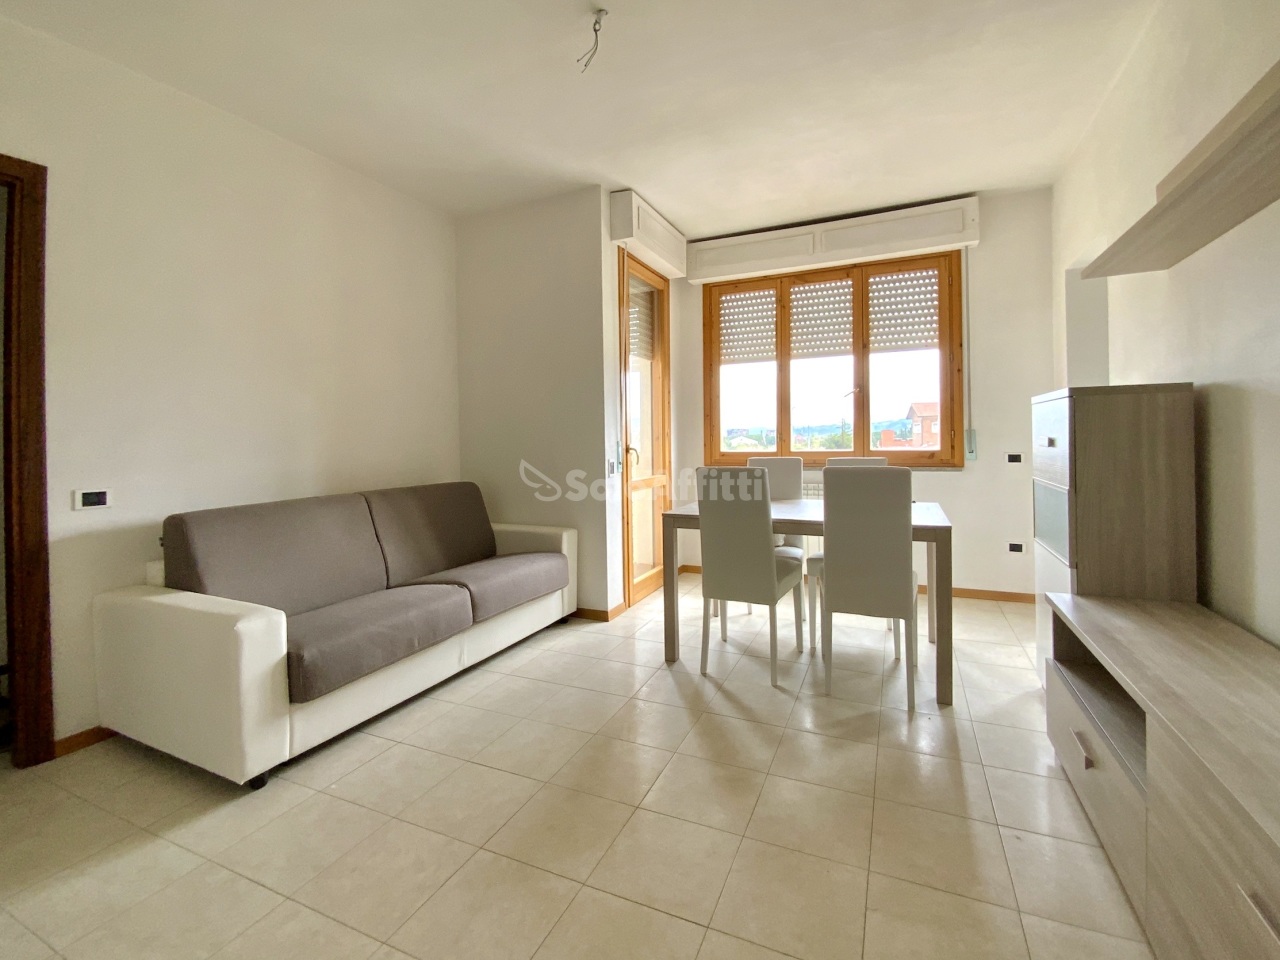 Appartamento in affitto a Empoli, 3 locali, prezzo € 660 | PortaleAgenzieImmobiliari.it